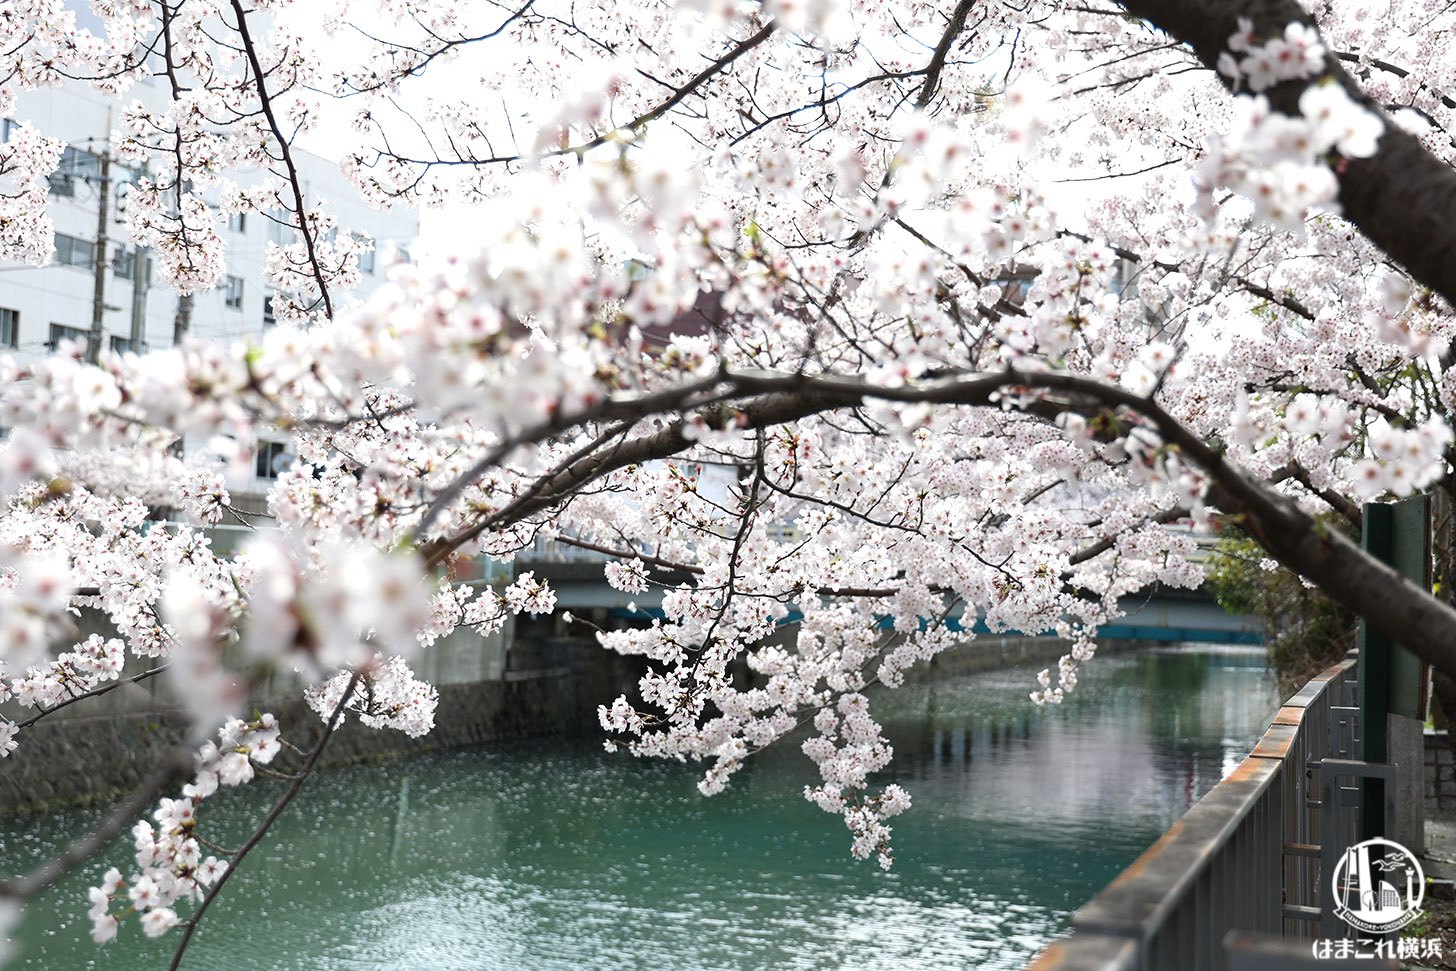 石崎川プロムナード 川面に映る桜